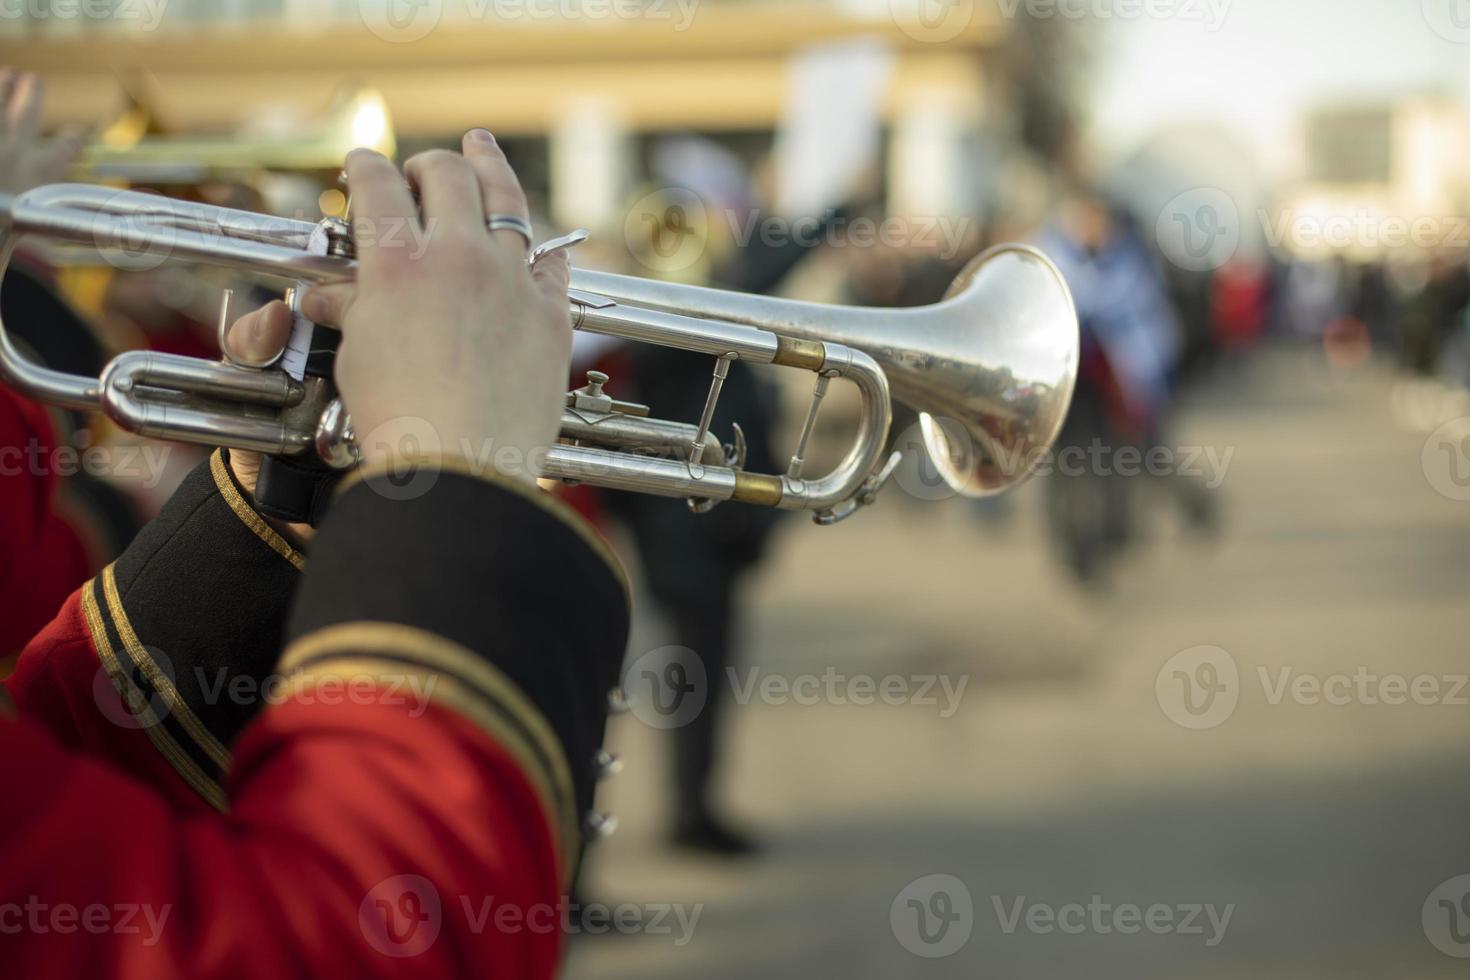 https://static.vecteezy.com/ti/photos-gratuite/p1/13584602-fanfare-militaire-en-parade-trompettistes-dans-la-rue-le-trompettiste-joue-de-la-melodie-orchestre-en-russie-photo.JPG